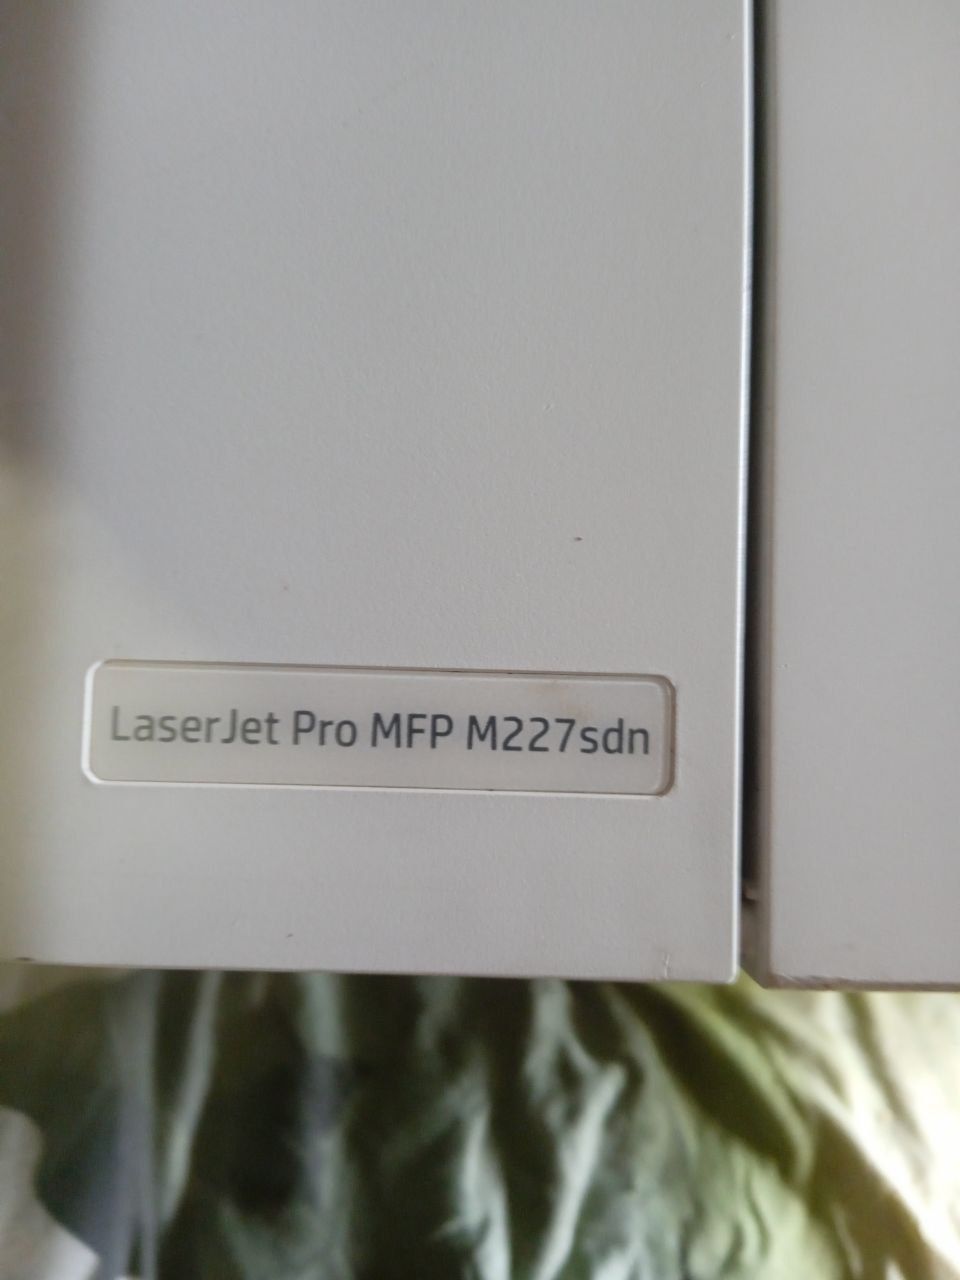 HP LaserJet Pro MFP M227 sdn